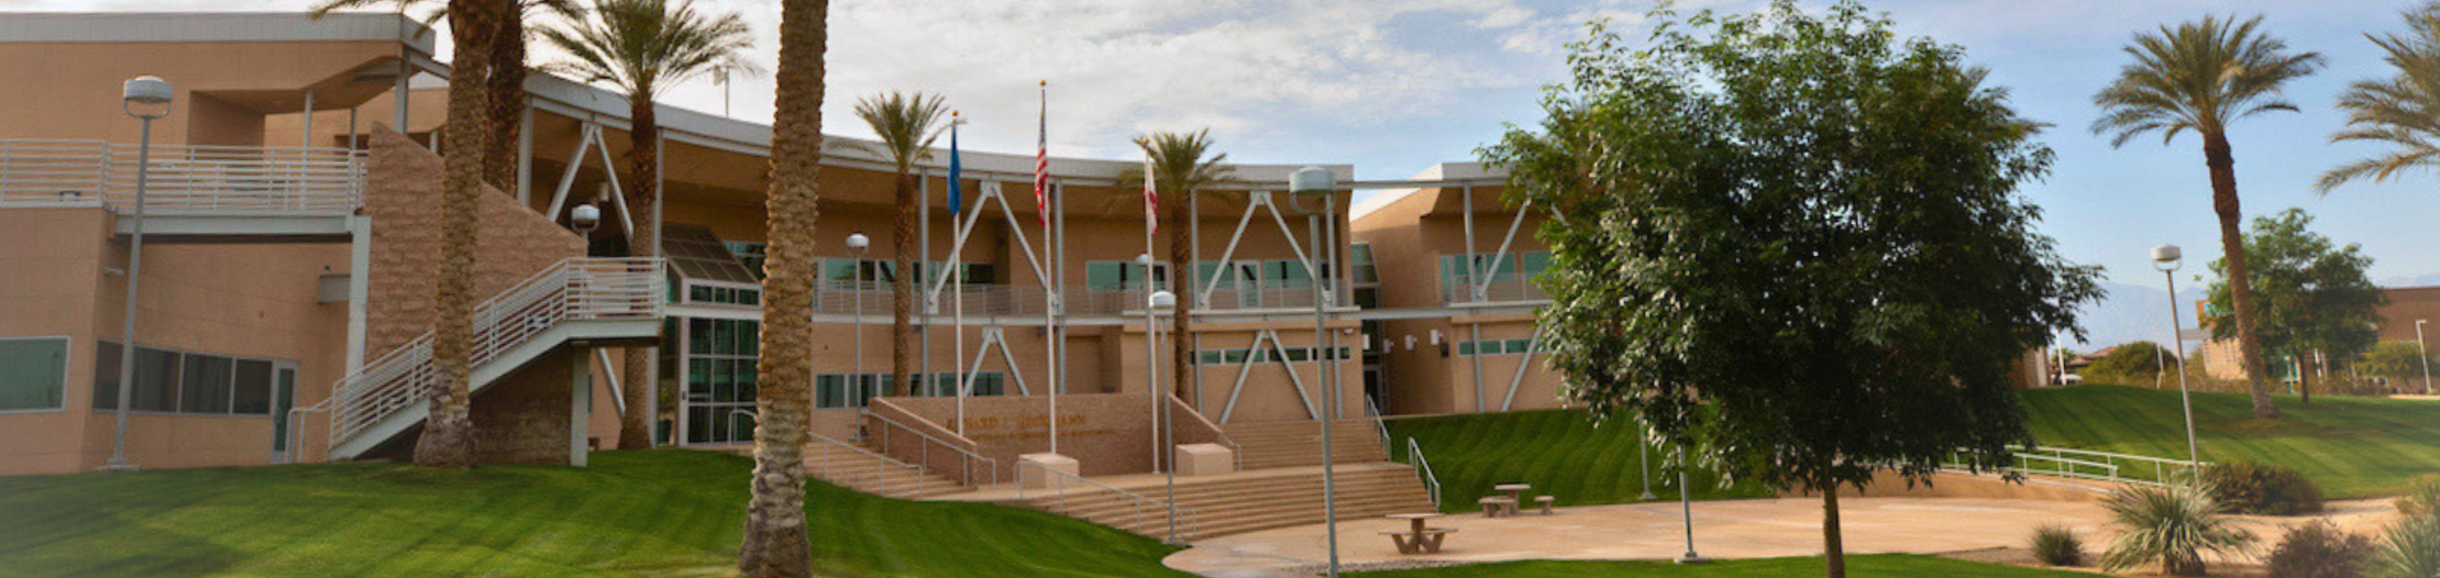 UCR Palm Desert campus